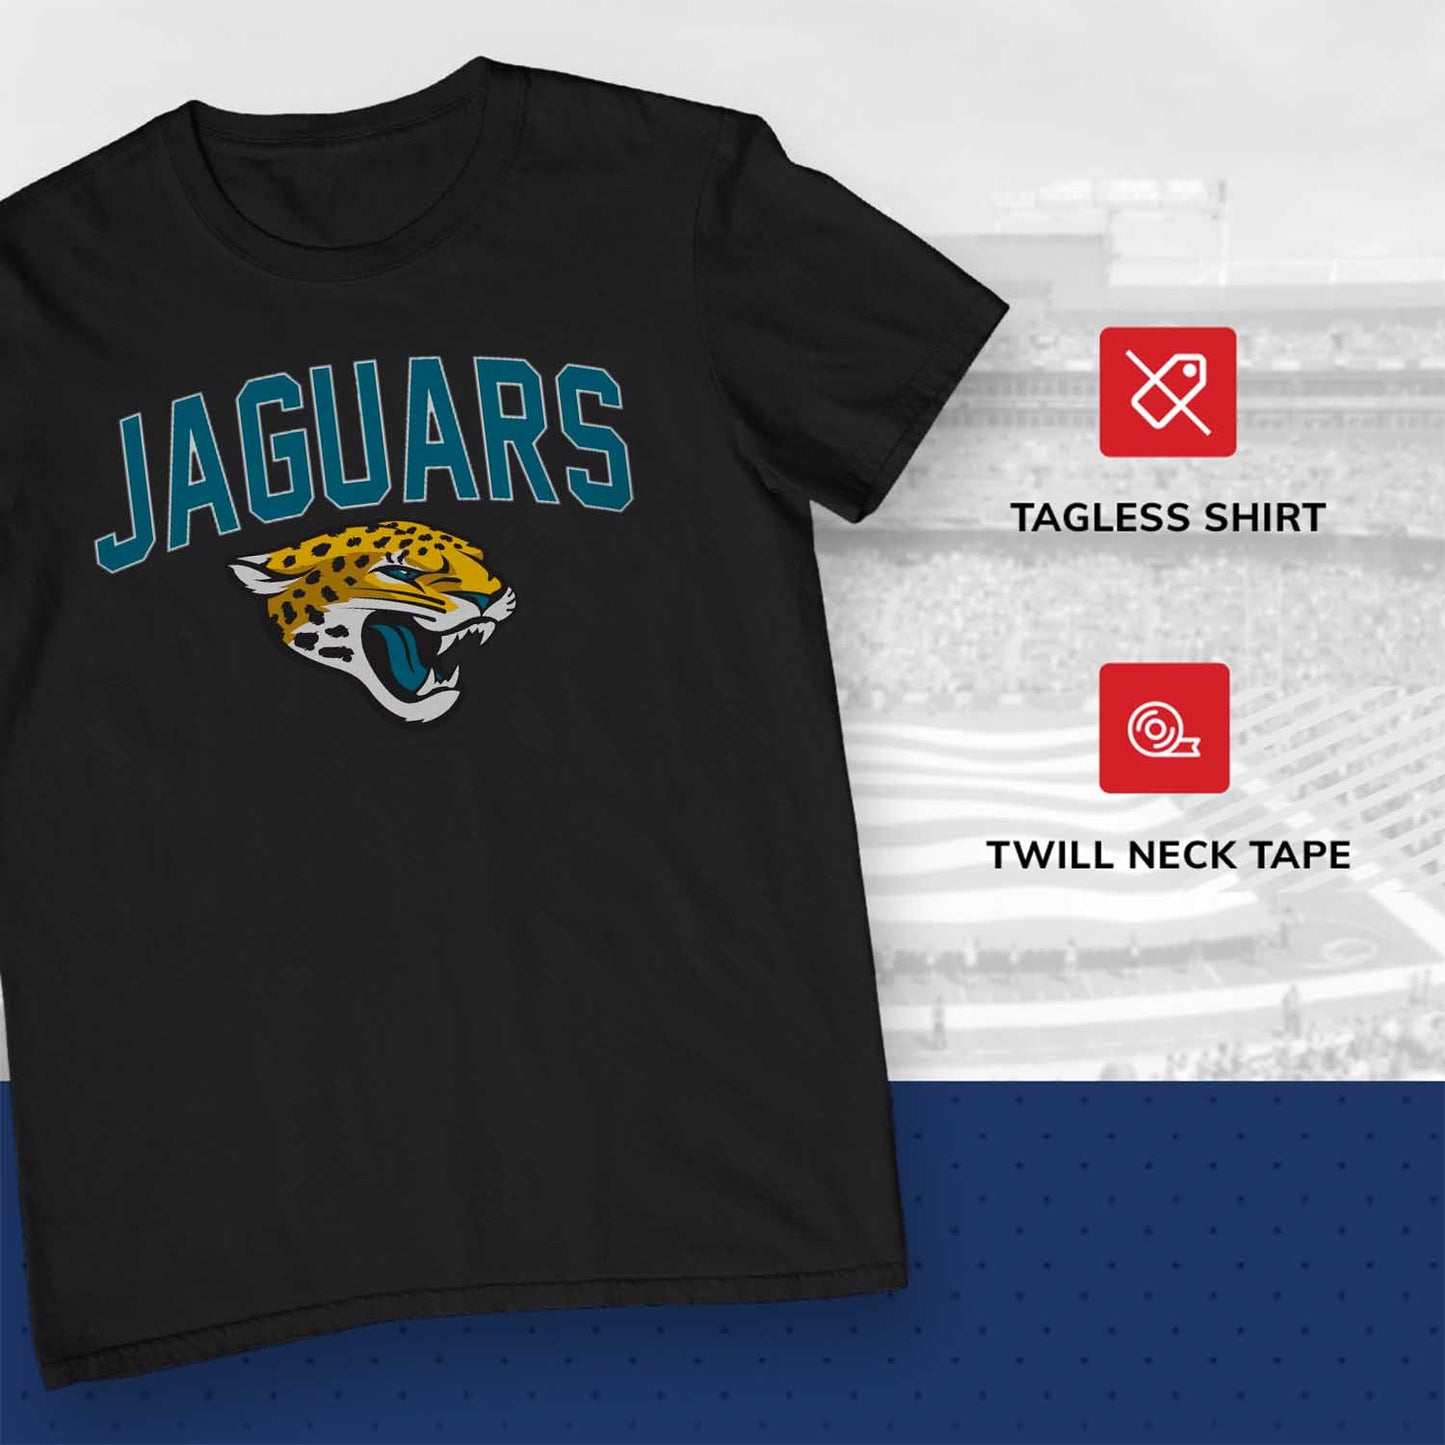 Jacksonville Jaguars NFL Home Team Tee - Black